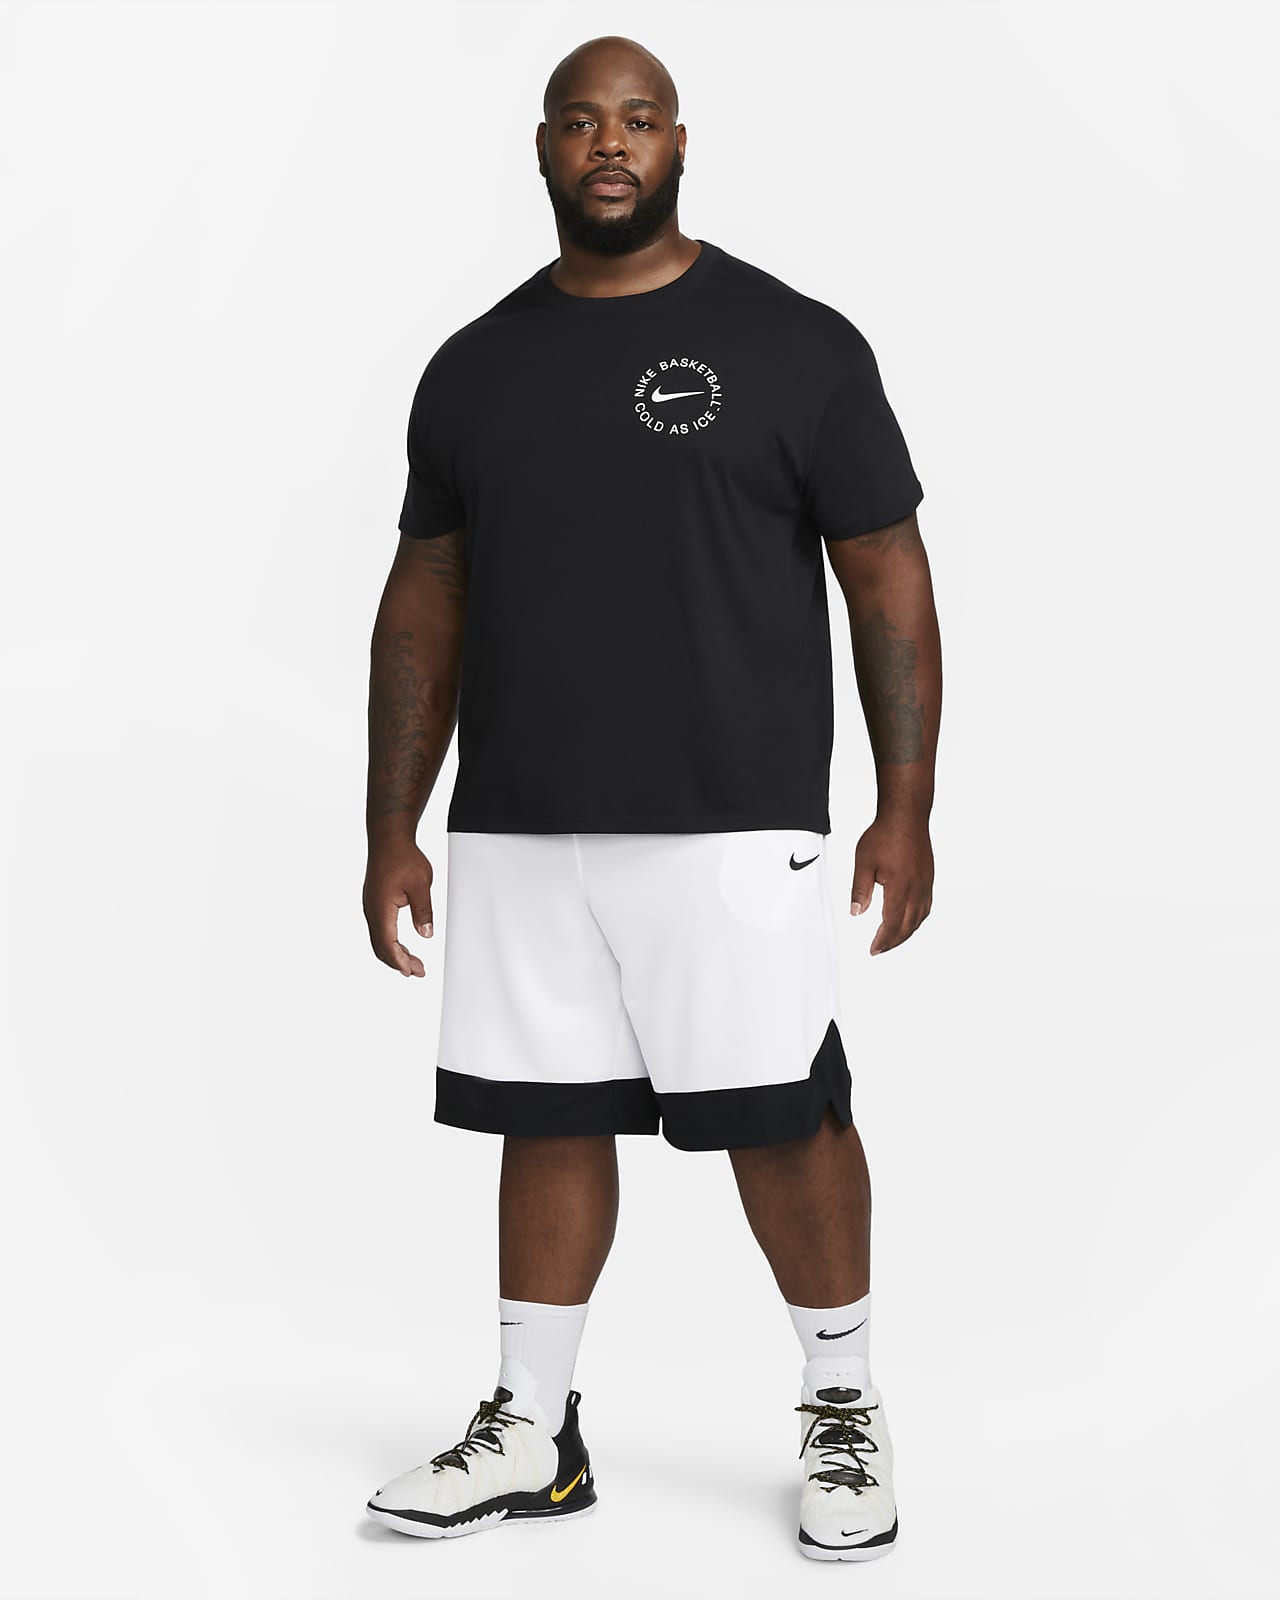 Nike Dri-FIT Icon corto de baloncesto - Hombre. ES